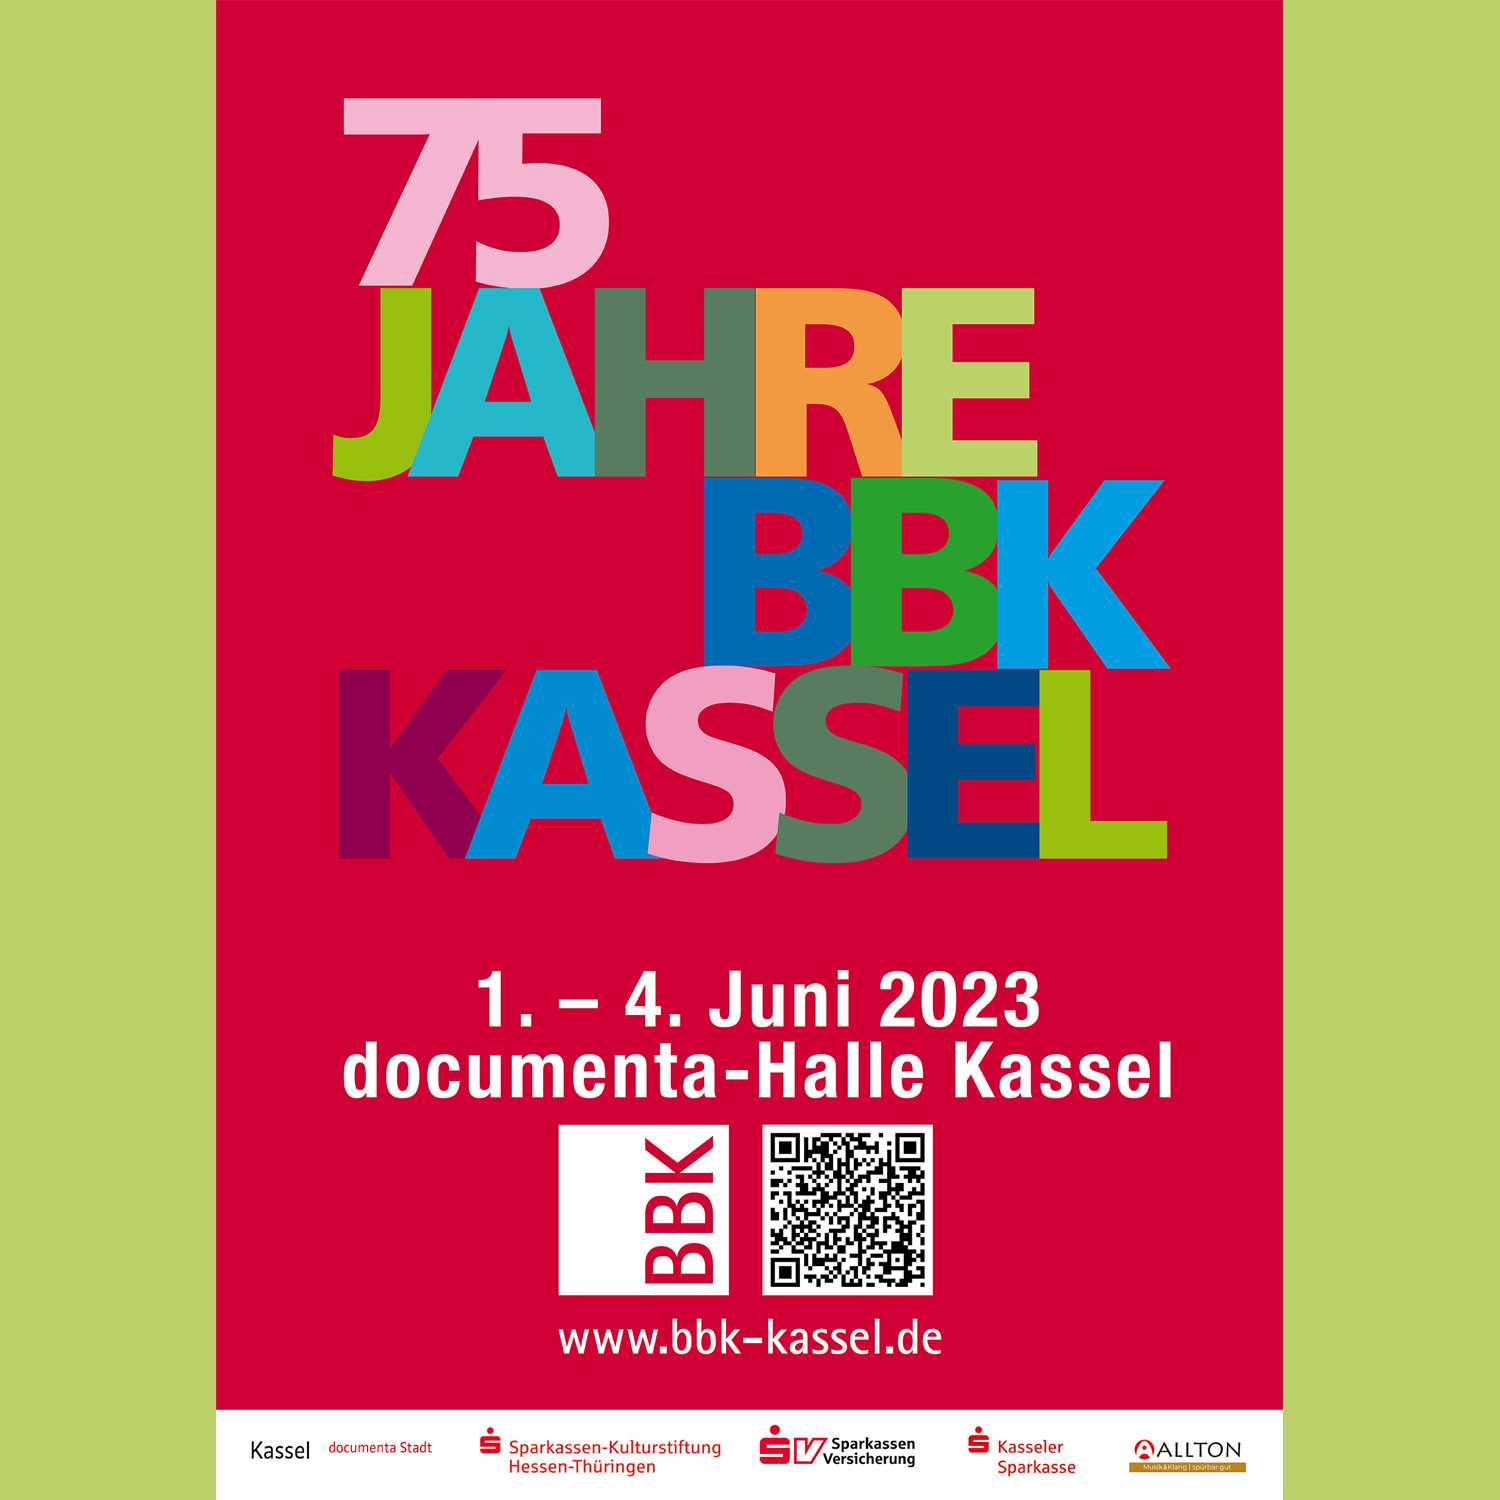 75 Jahre BBK Kassel